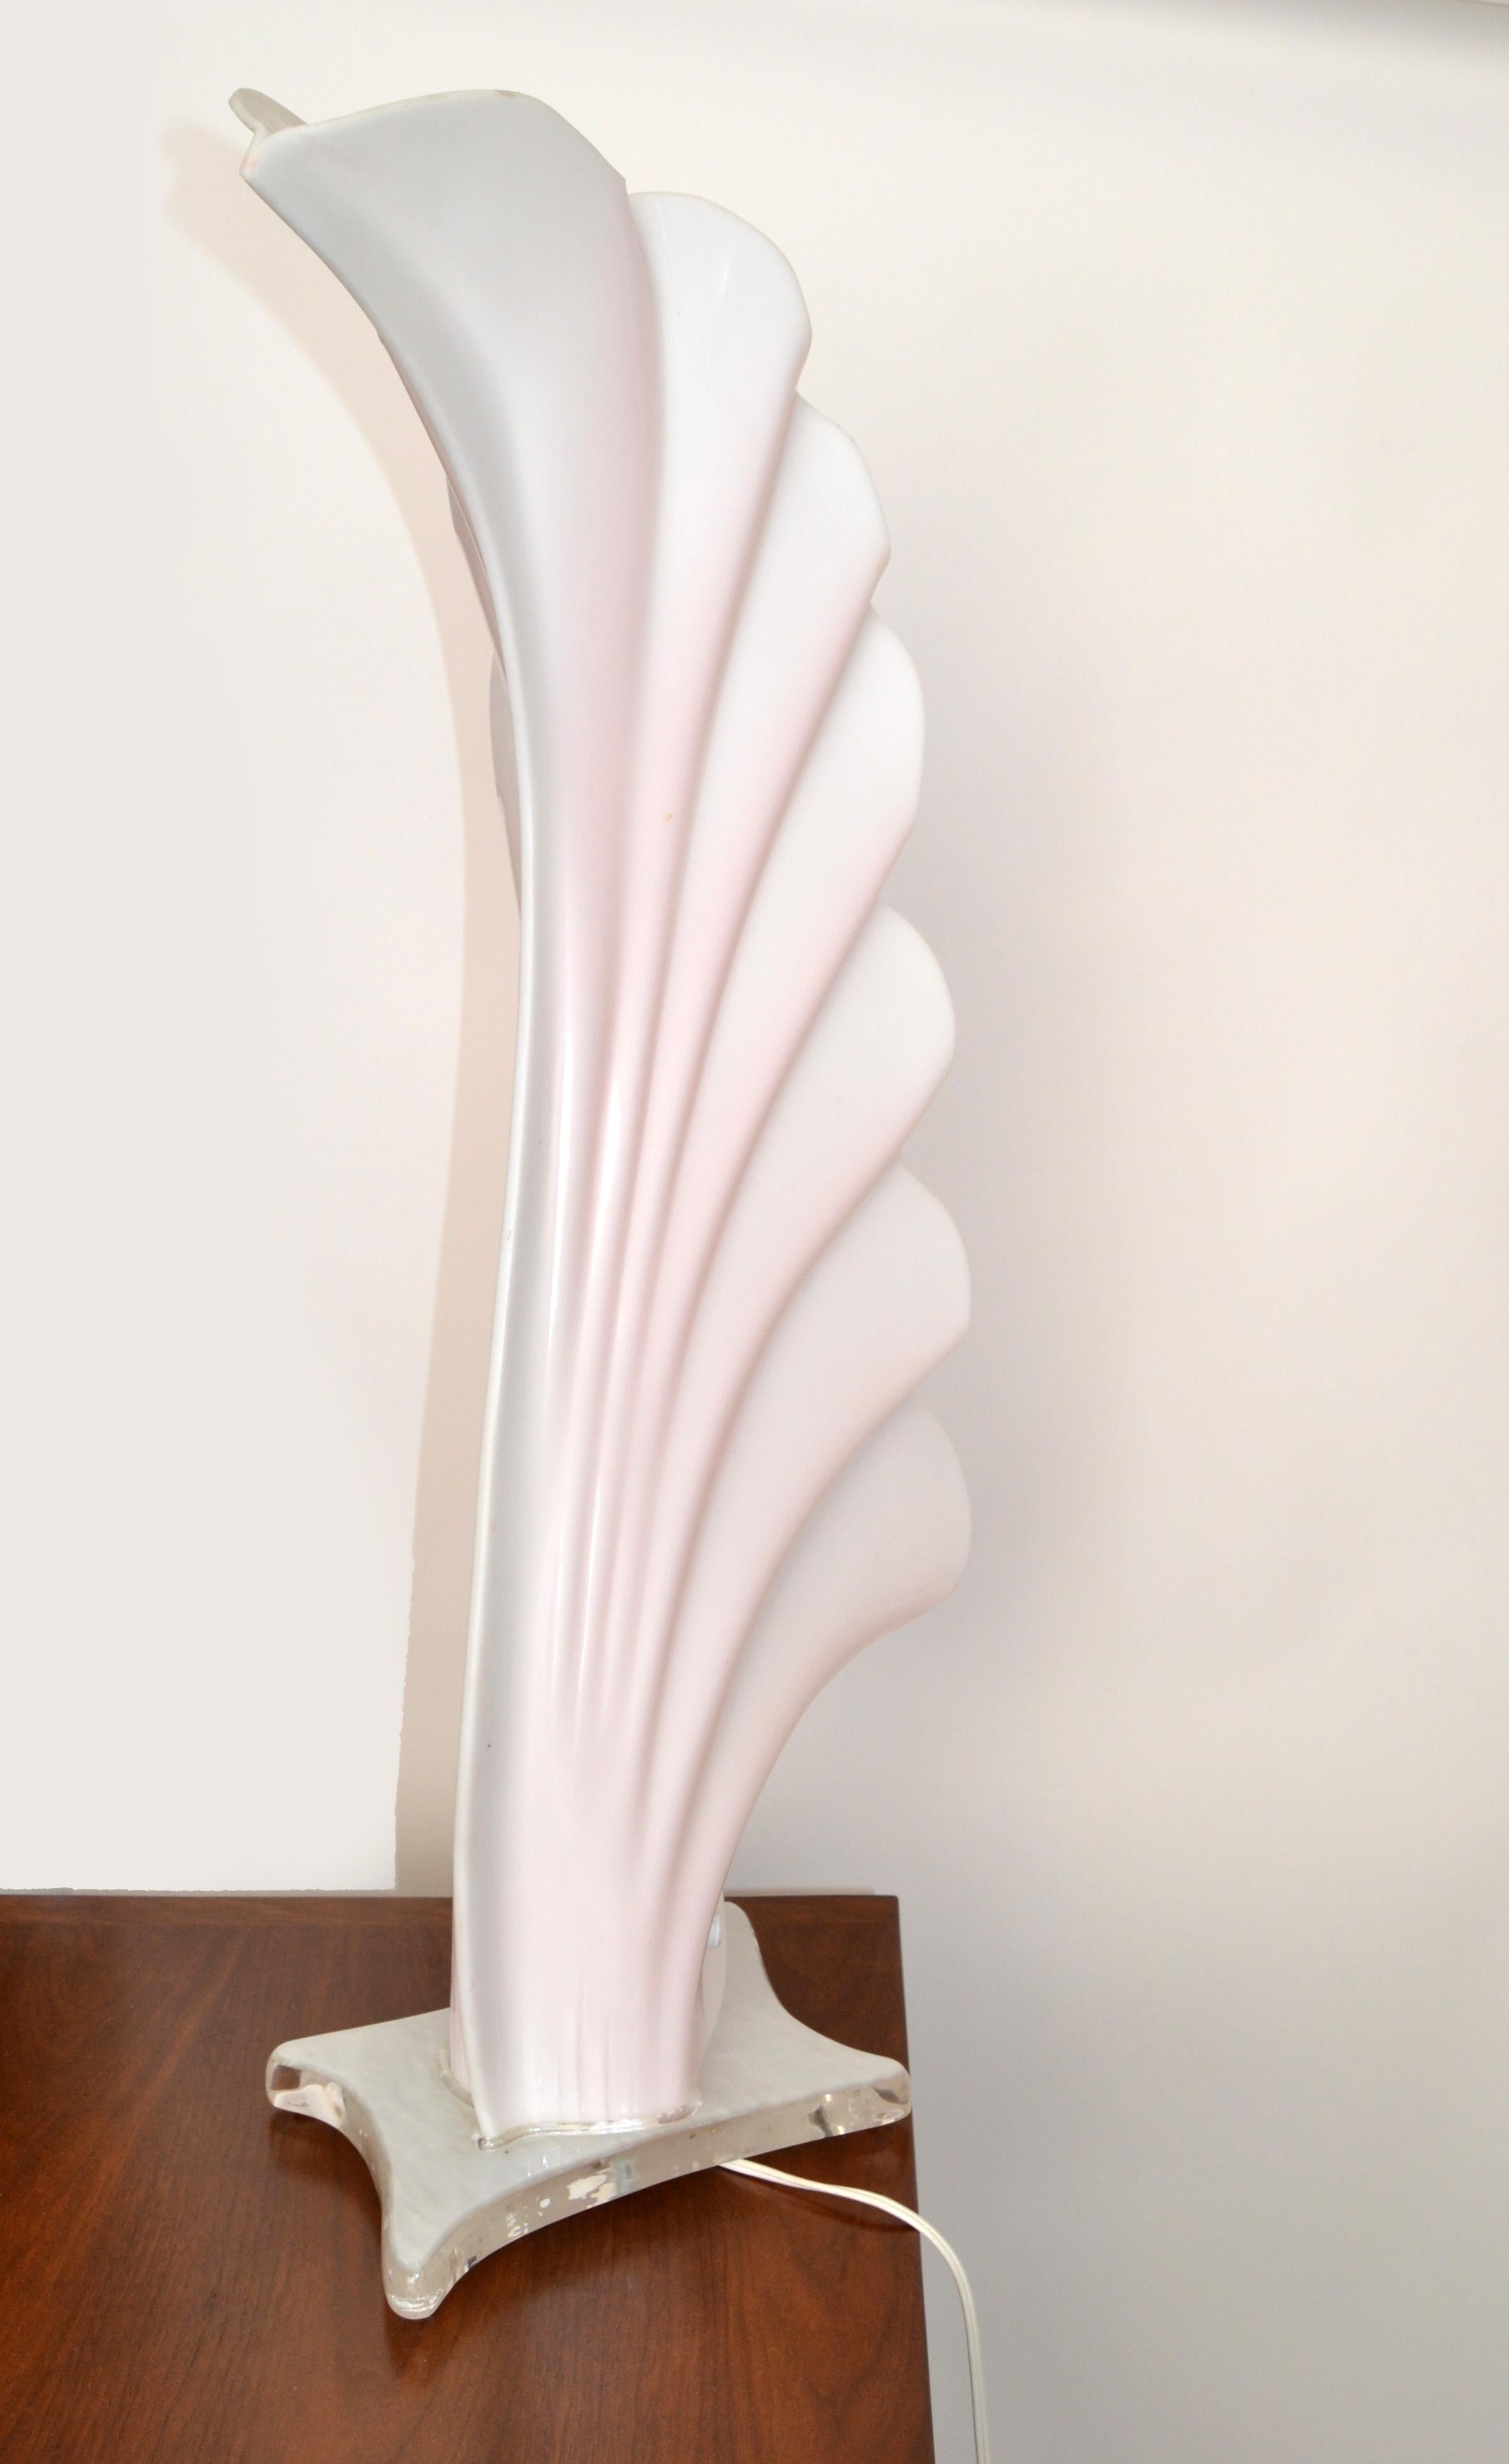 Lampe de table monumentale en acrylique rose et blanc de Roger Rougier, fabriquée au Canada.
Câblage US avec douille en porcelaine et prend une ampoule ordinaire ou LED max. 60 watts.
La base mesure : 10 x 7 pouces.
En bon état vintage avec